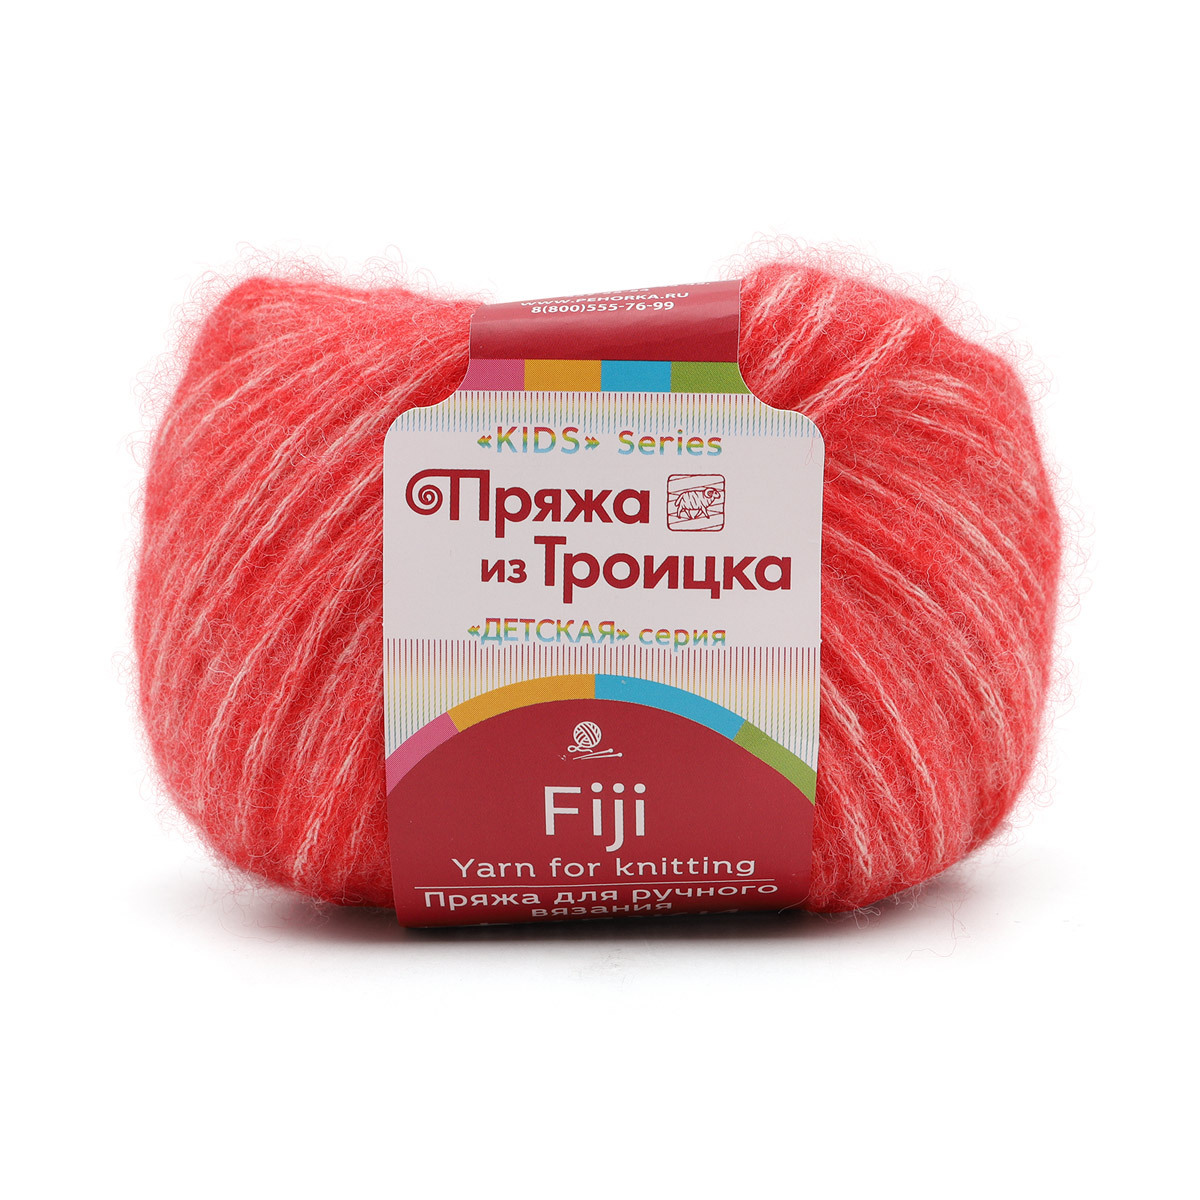 Пряжа для вязания из Троицка Фиджи 50г, 95м (меринос) (88 красный мак), 5 мотков